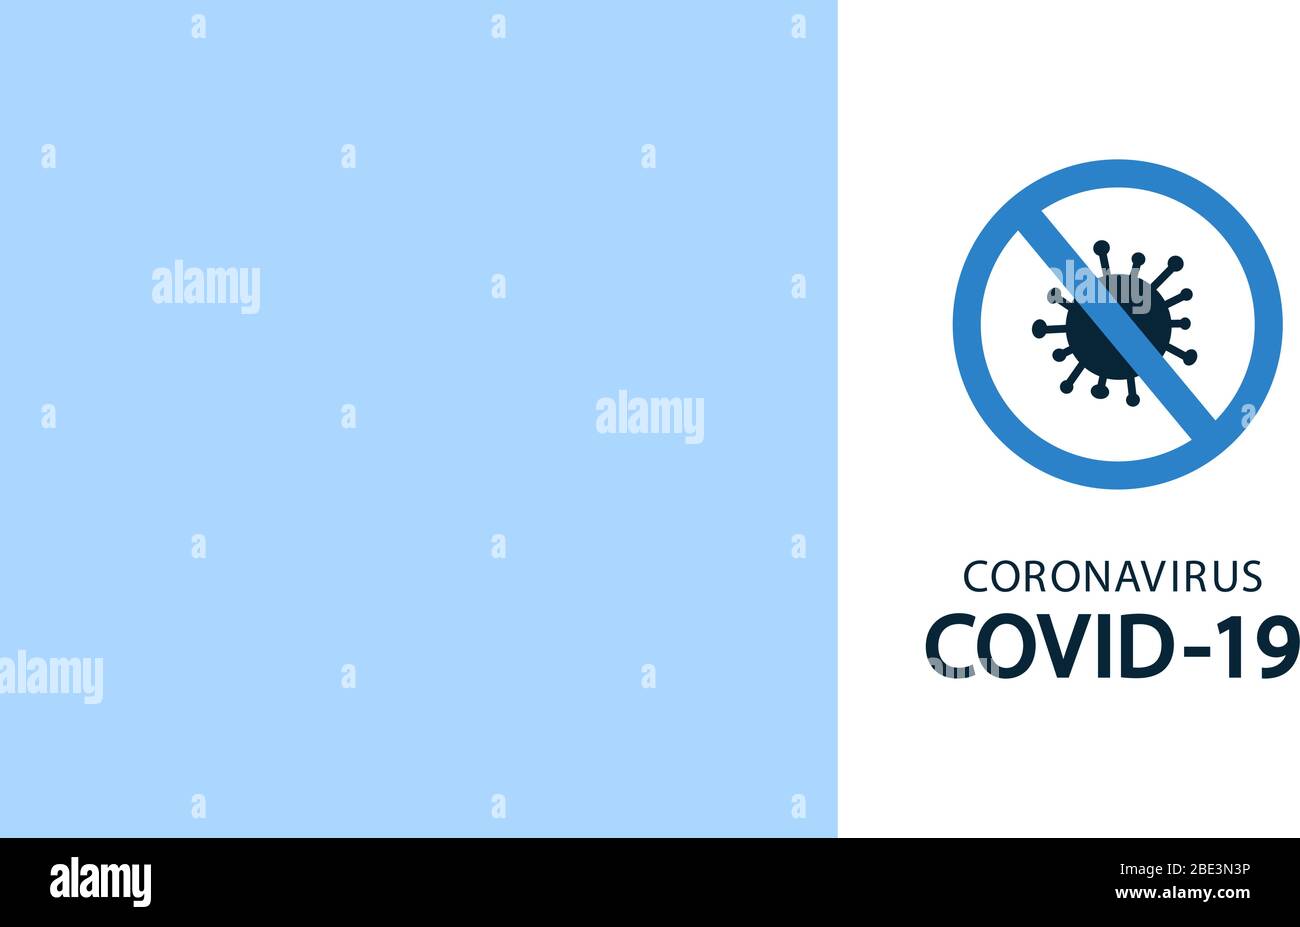 Ilustración vectorial en estilo plano. Stop coronavirus COVID-19 concepto. Prohibir signo. Nueva bacteria. Sin infección, gérmenes. Cartel, banner, folleto Ilustración del Vector